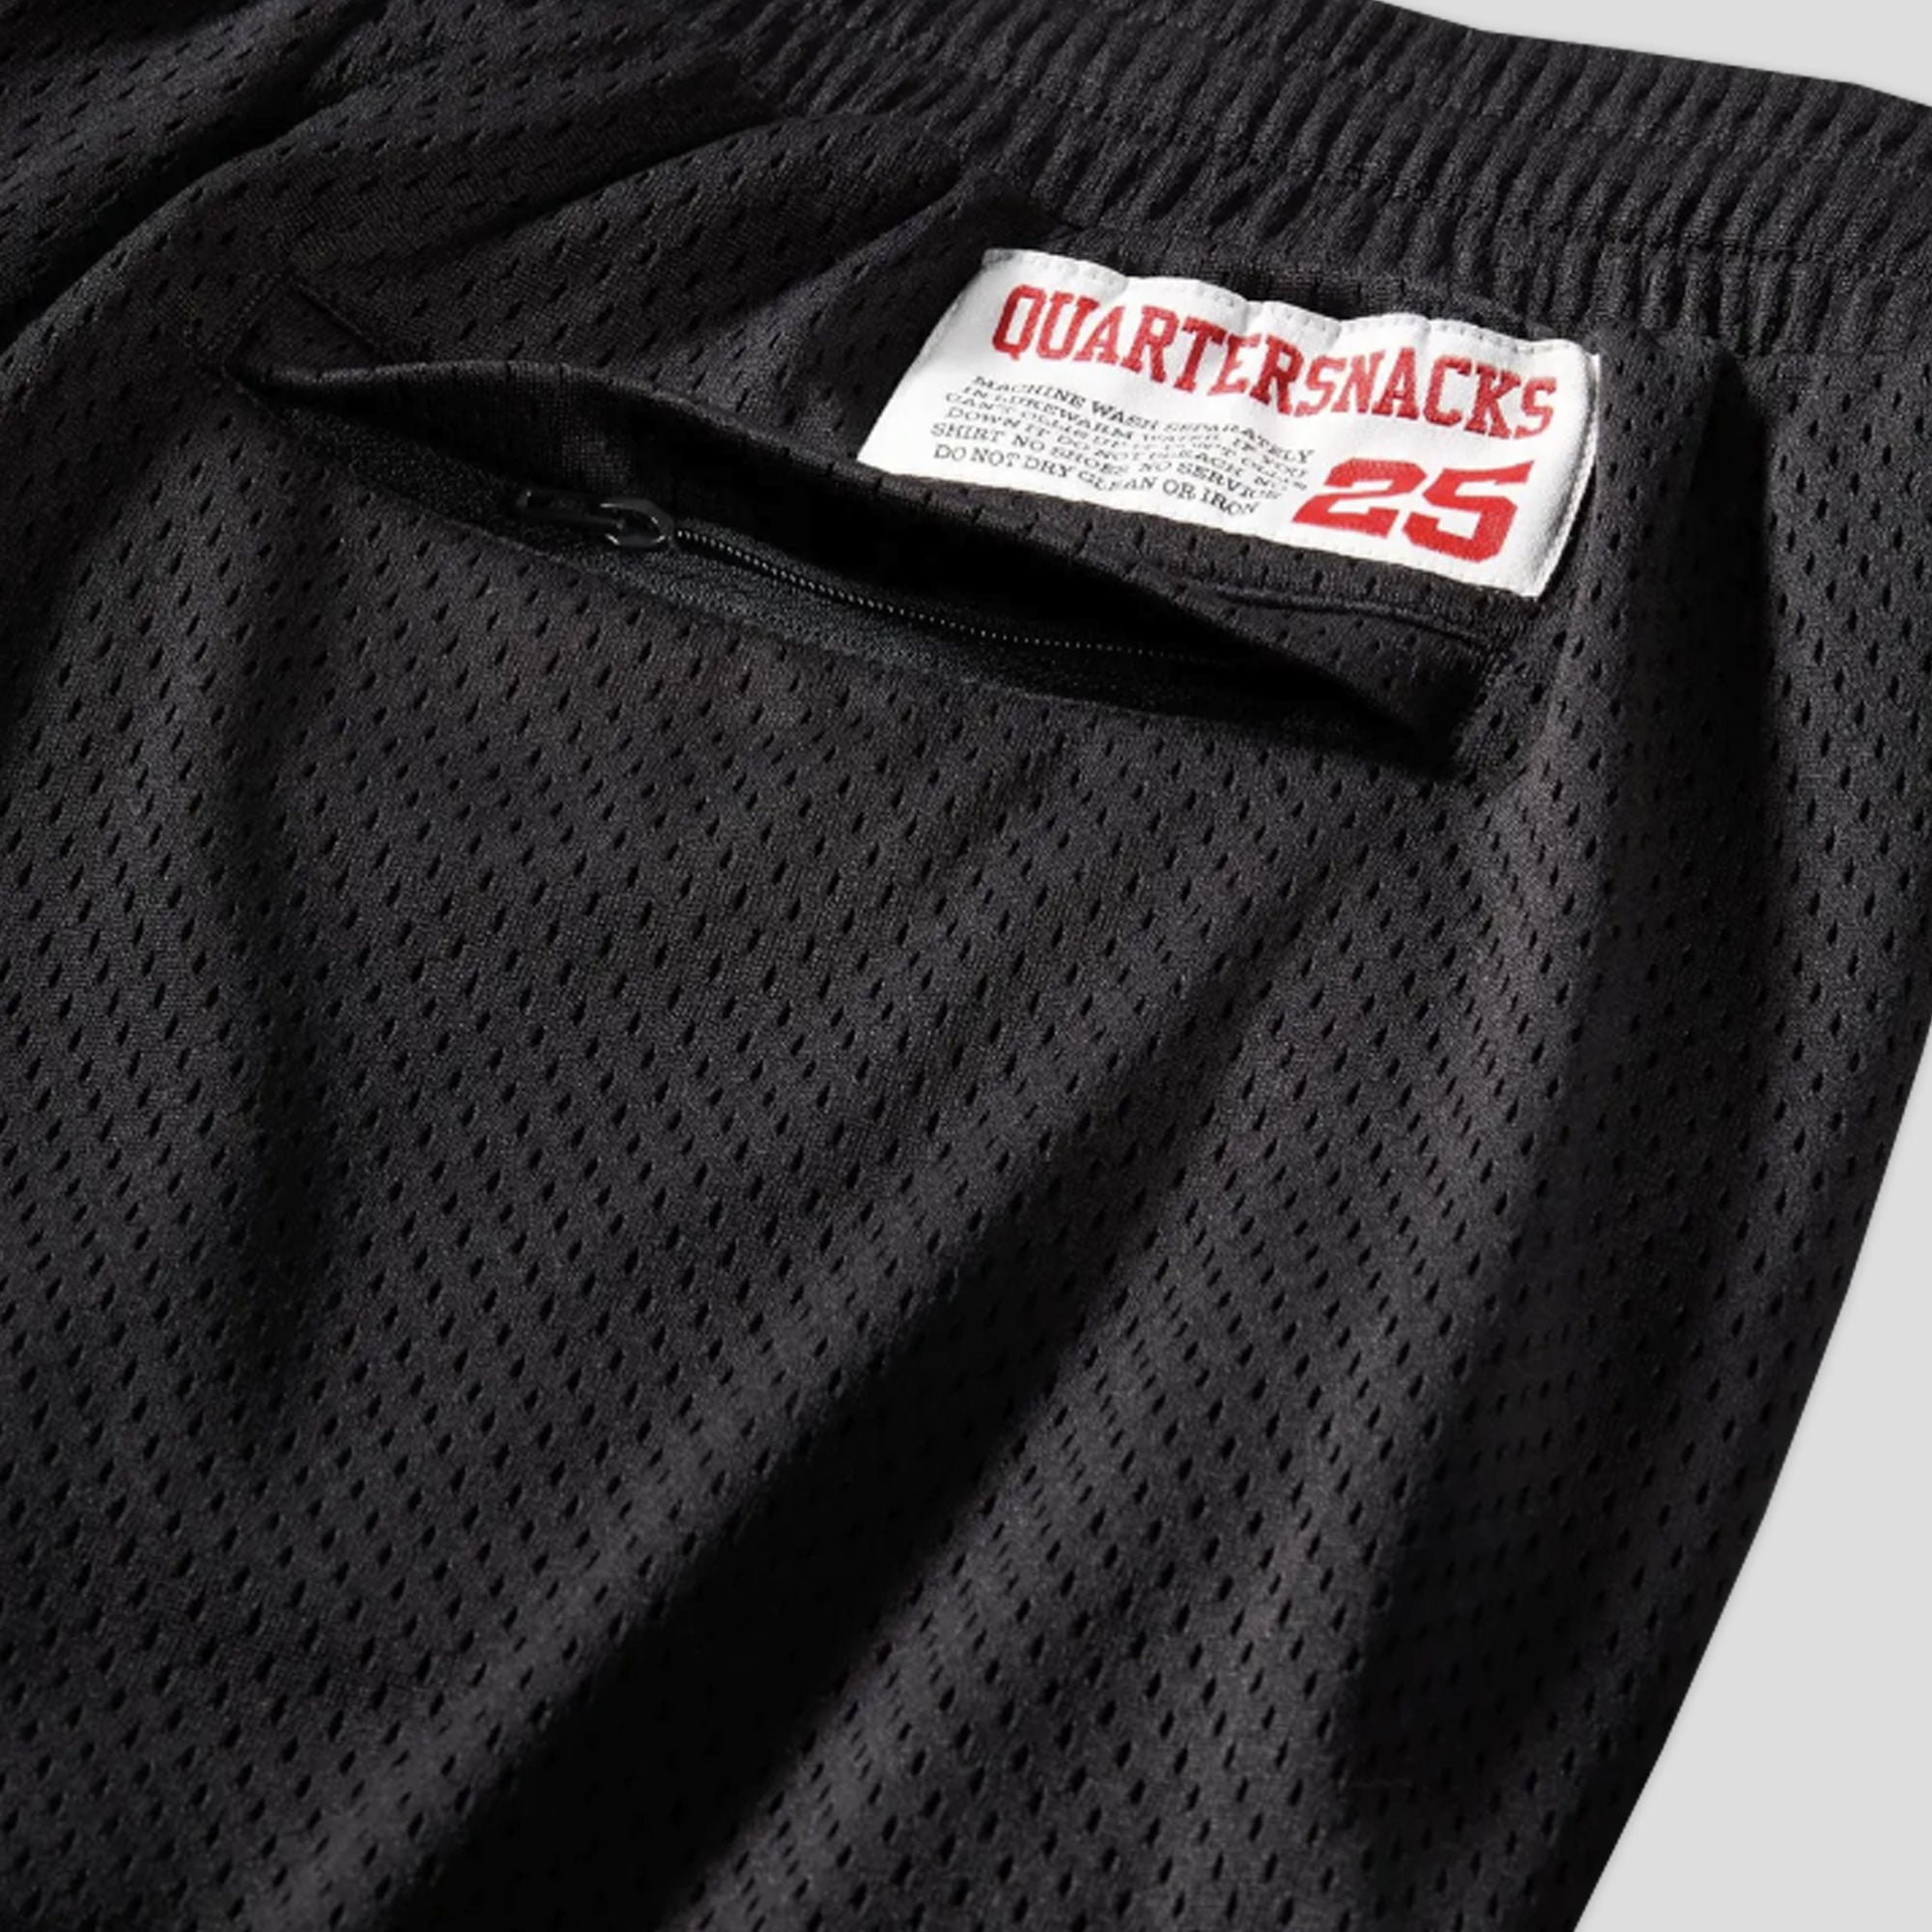 Converse Cons & Quartersnacks Shorts - Black